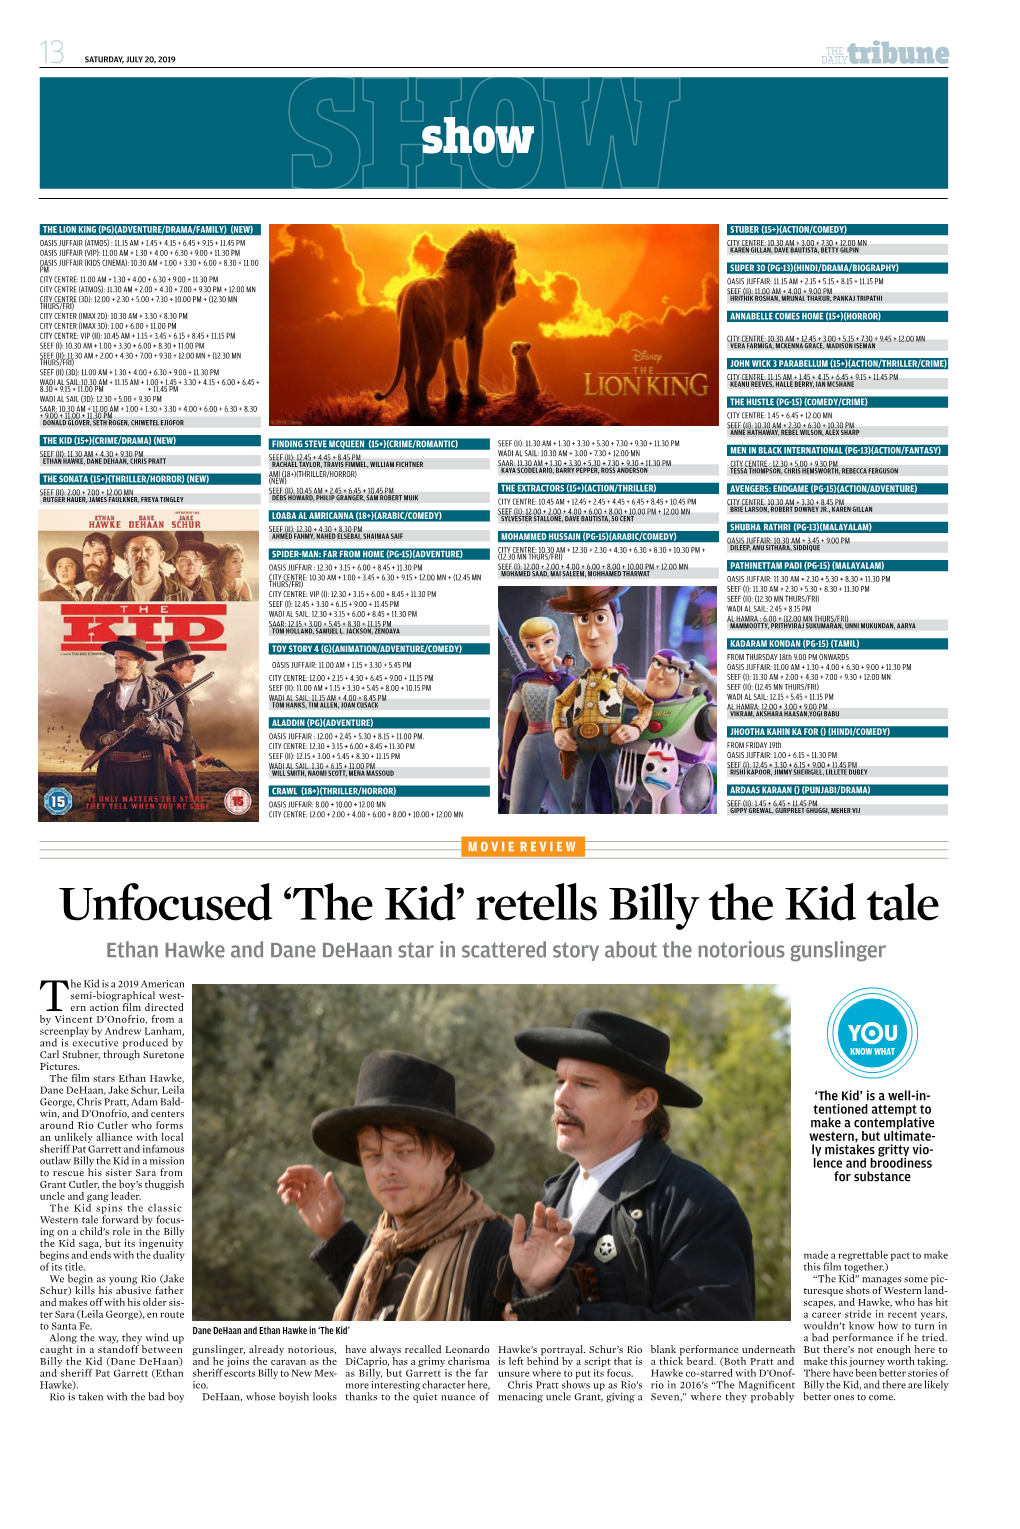 Unfocused 'The Kid' Retells Billy the Kid Tale